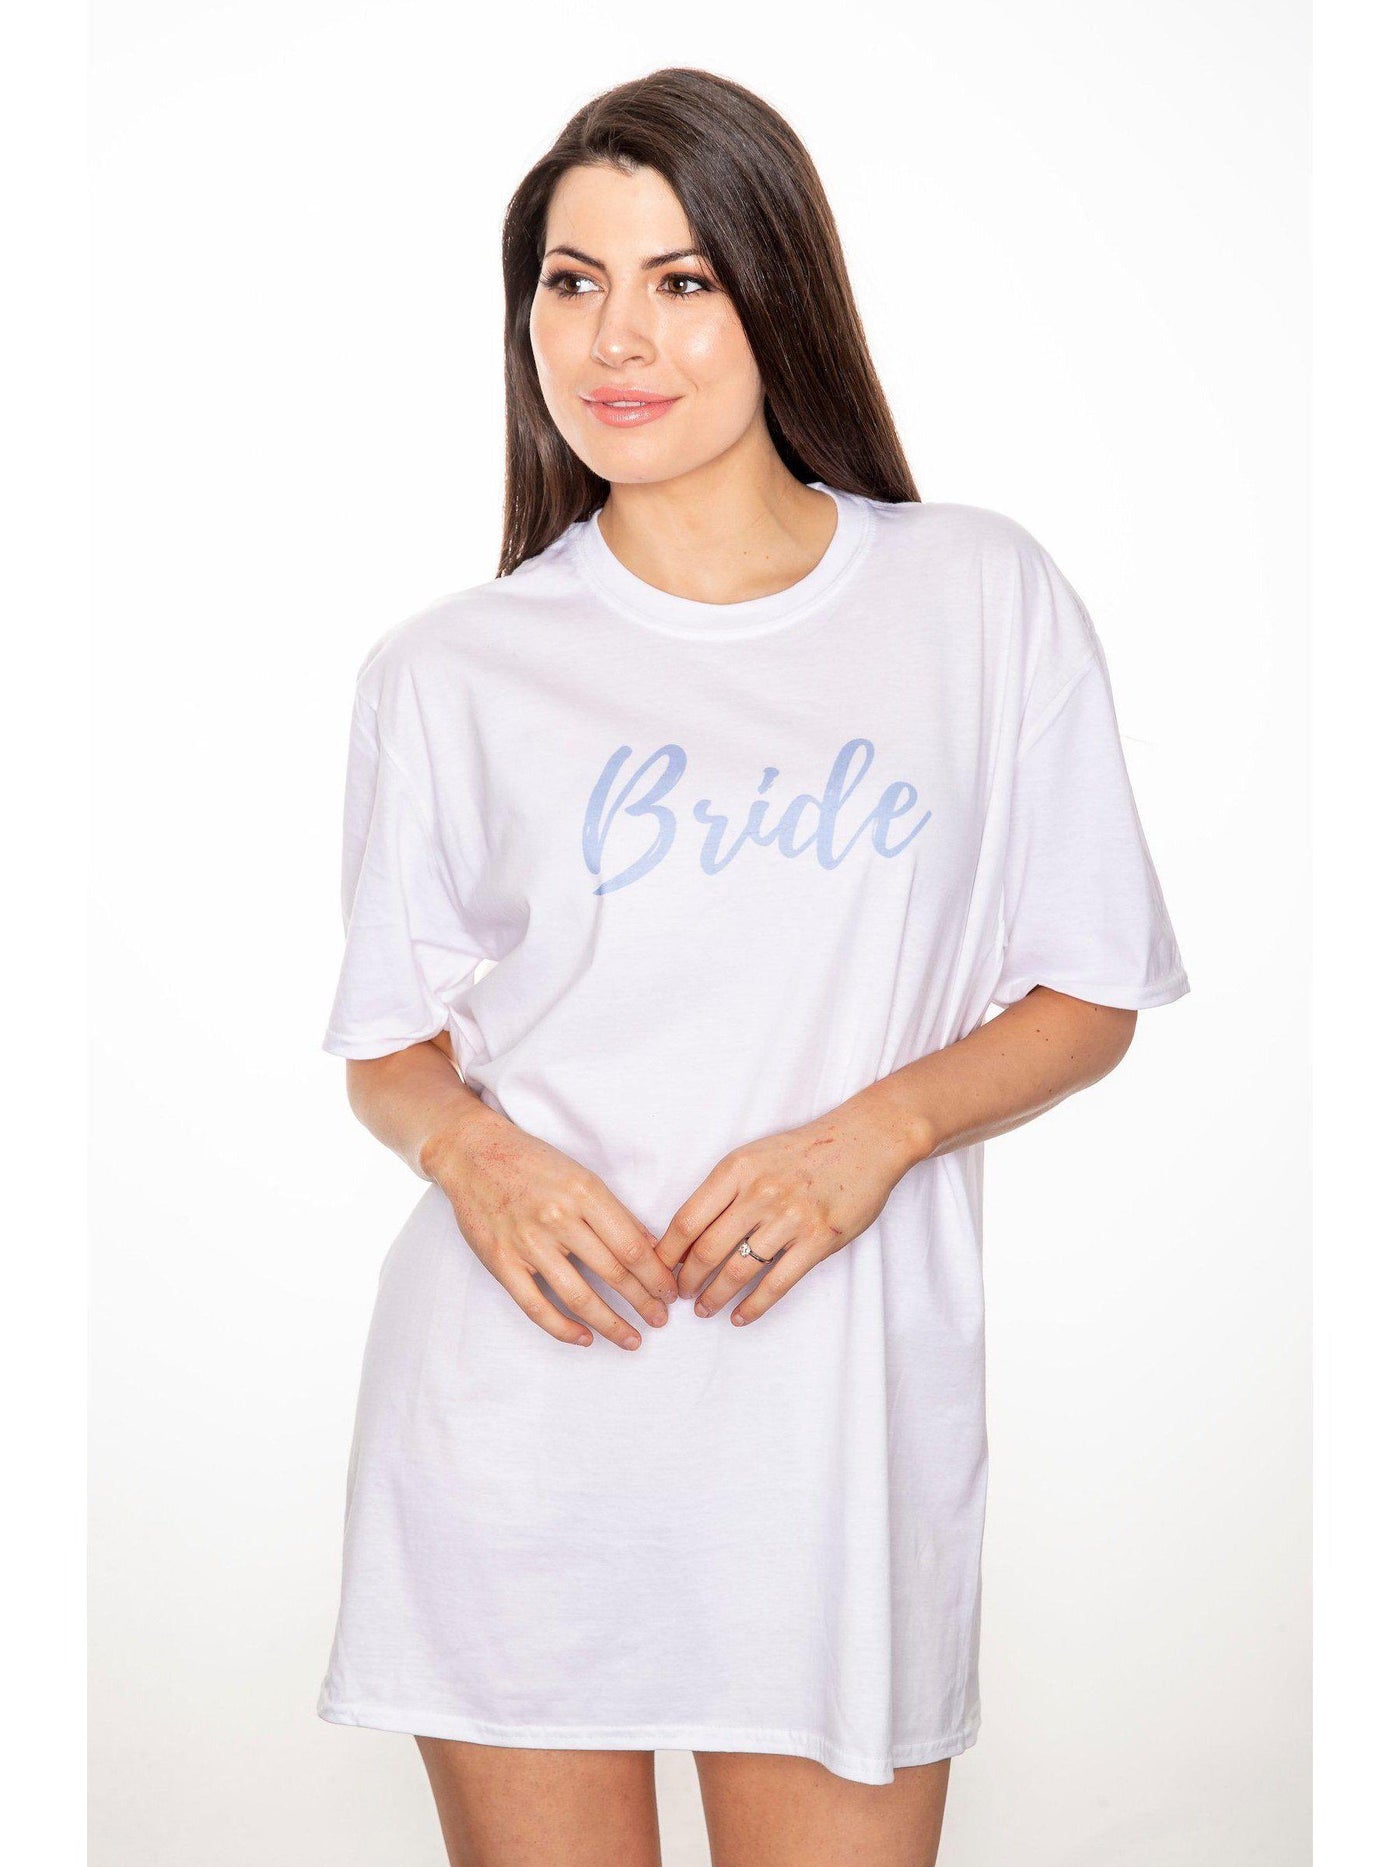 BRIDE sleep tee | personalised pyjamas for bride